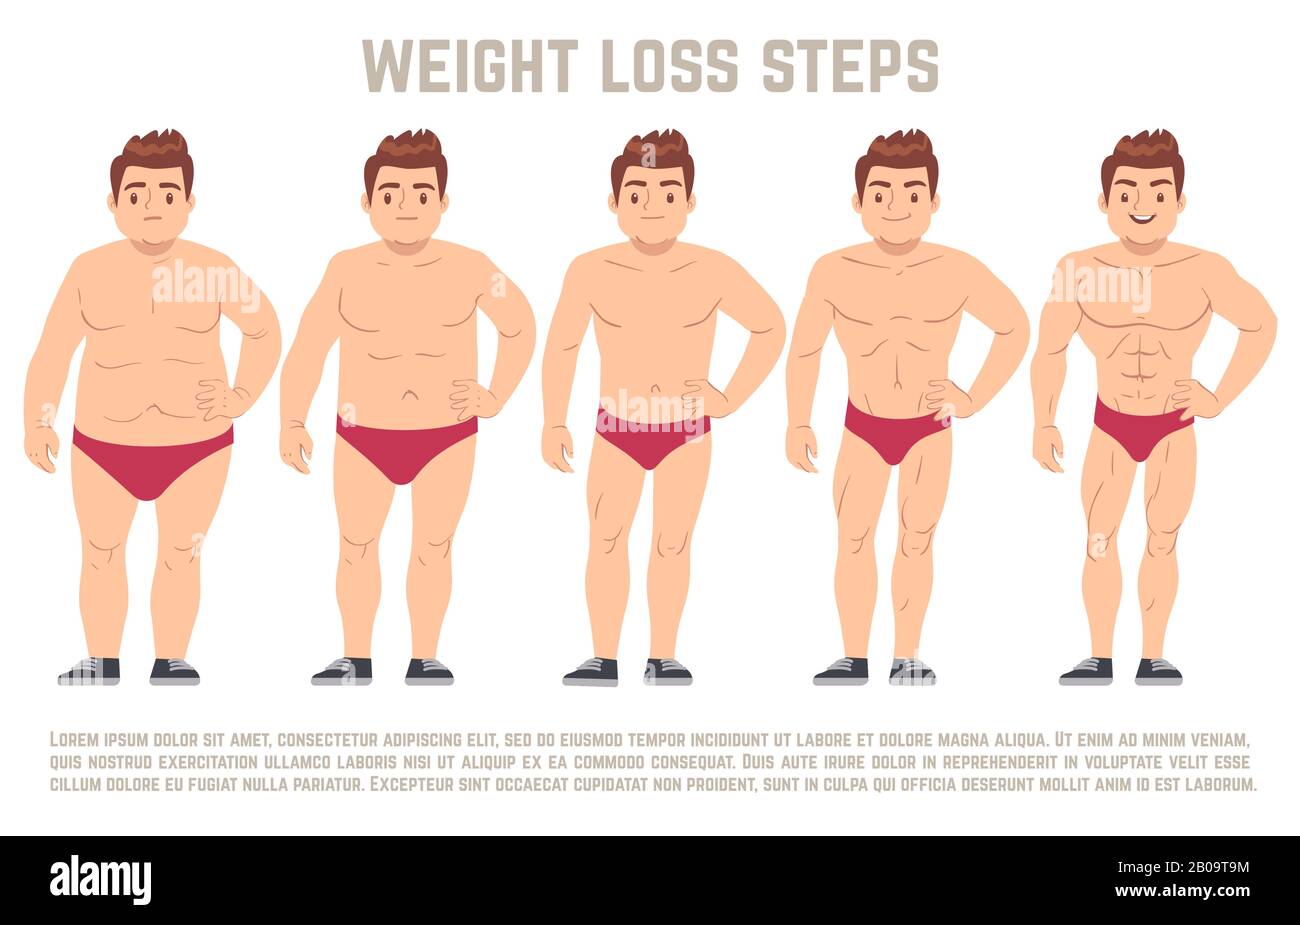 Mann vor und nach der Diät, Körper von Fett zu dünn. Gewichtsverlust Schritt Vektordarstellung. Körper männlich Gesundheit und schlanker, Erwachsener Mann mit Fettkörper Stock Vektor